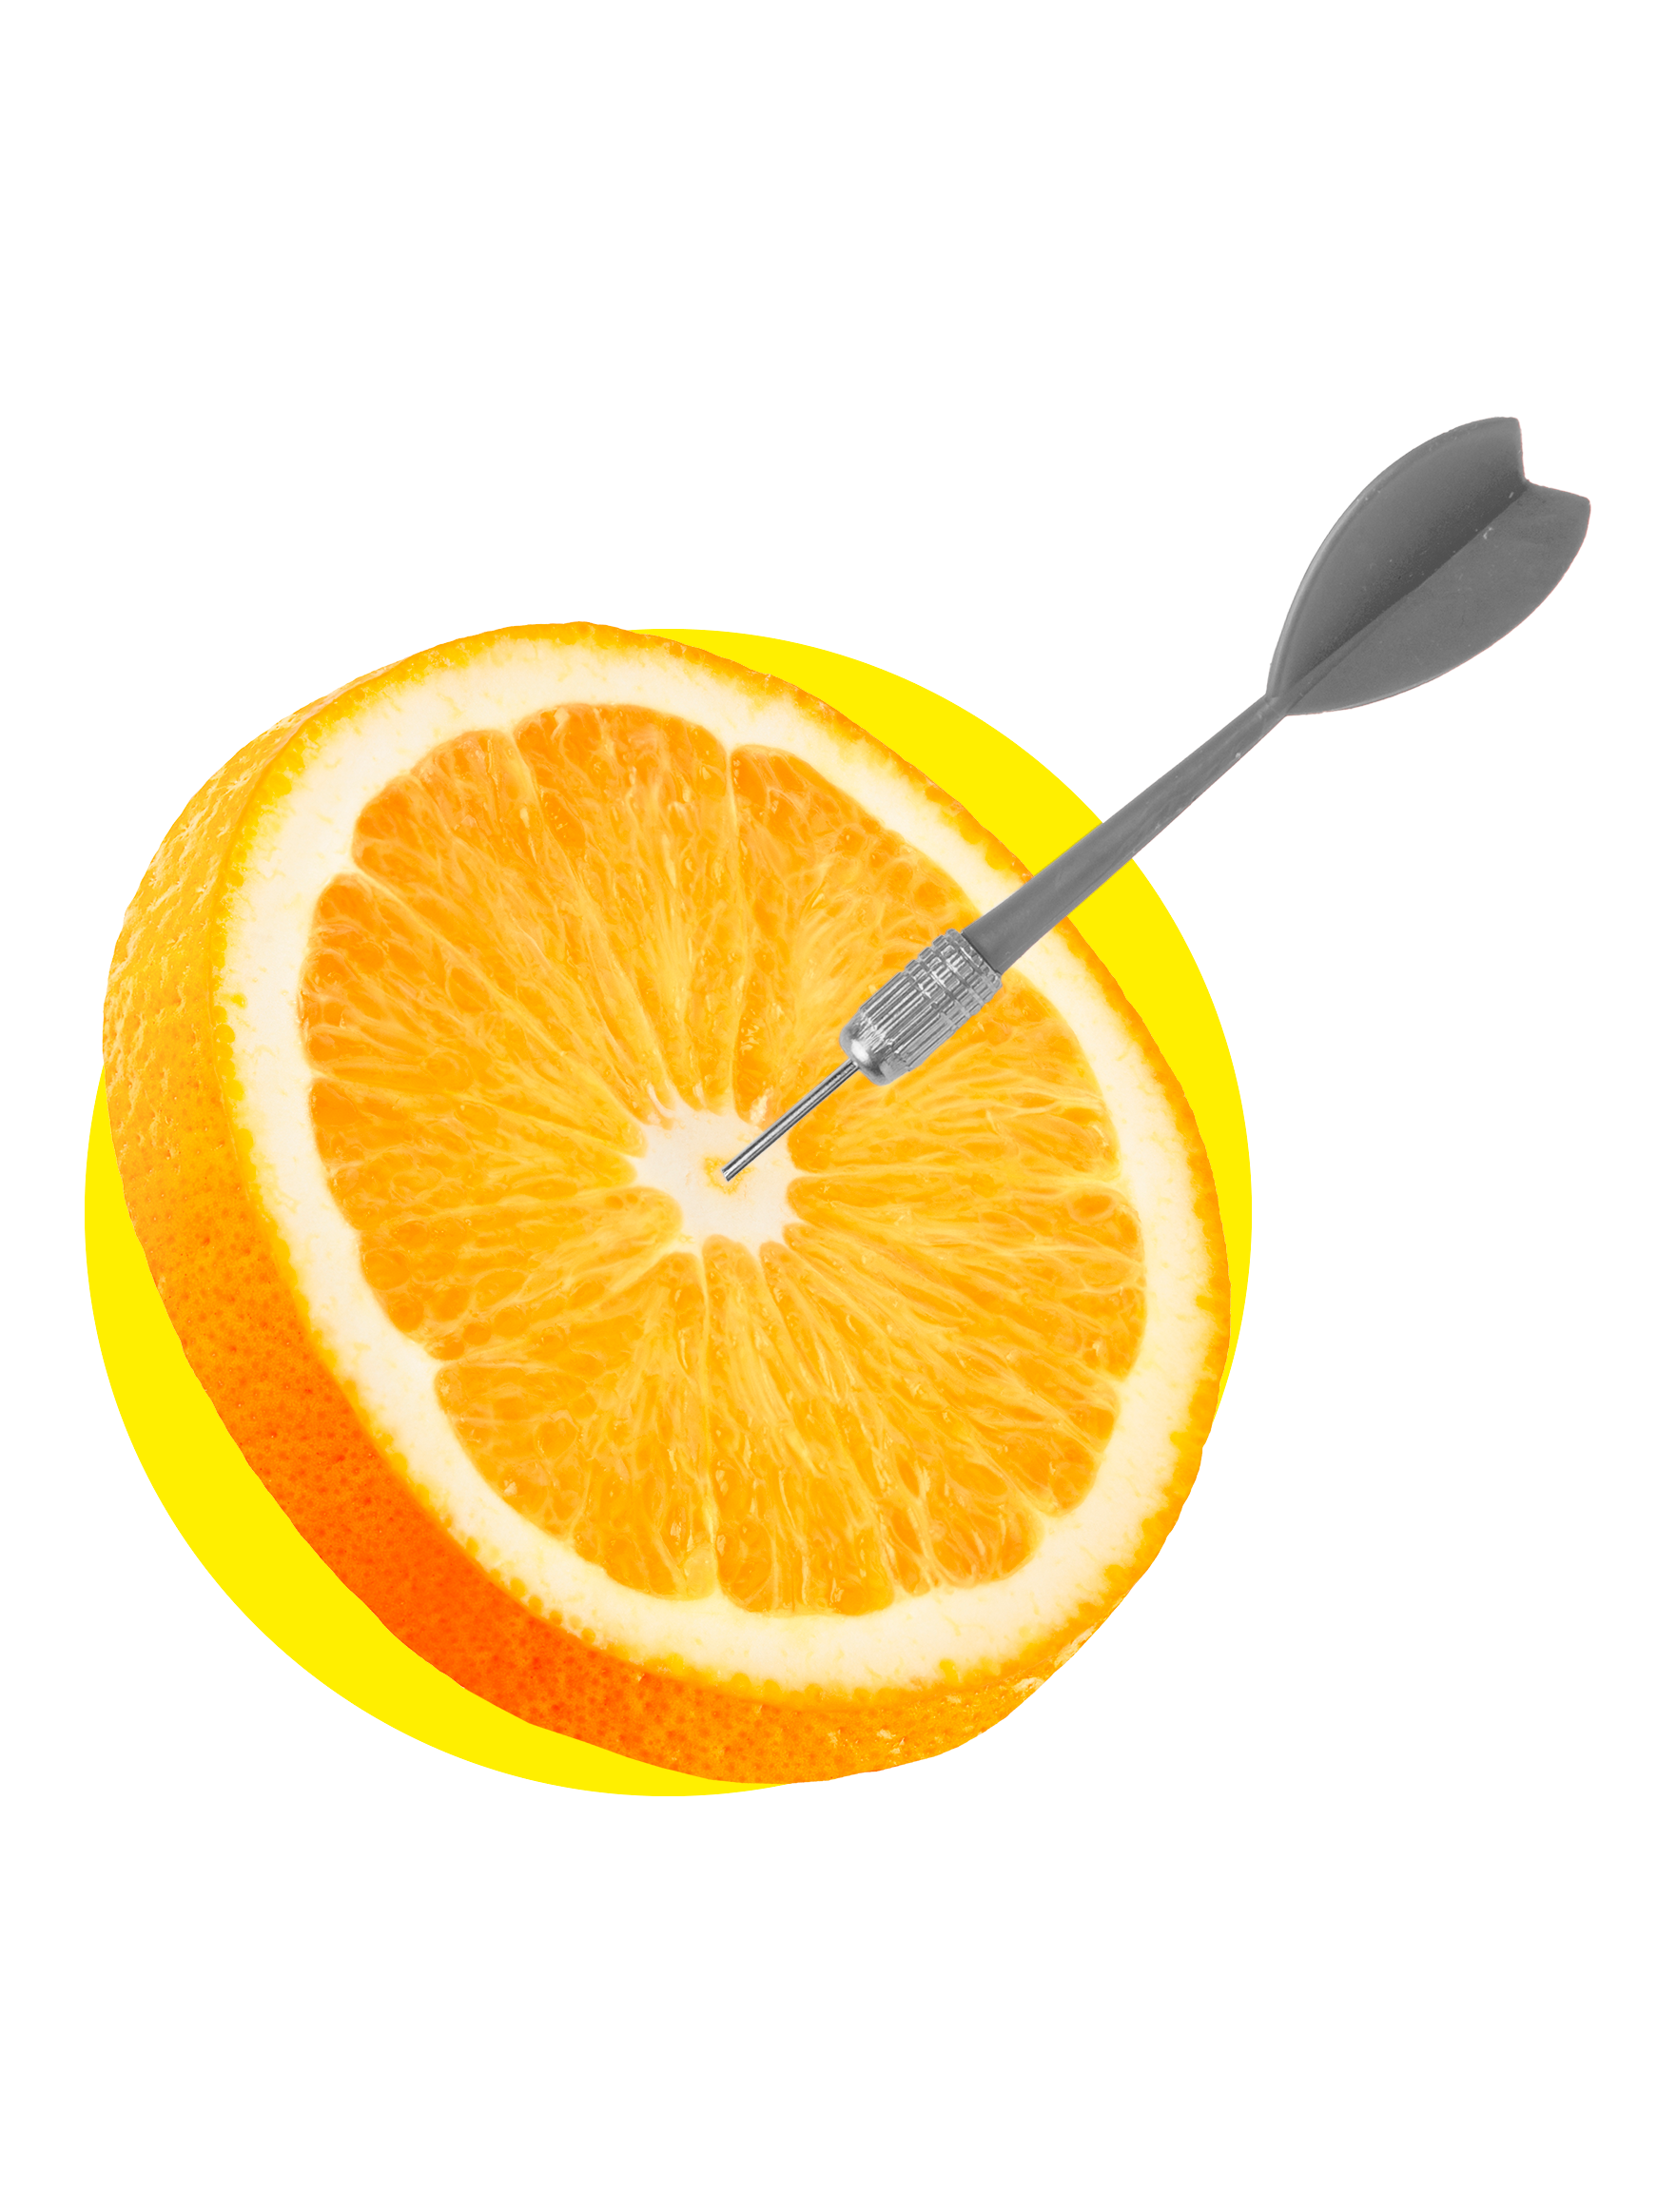 Uma fatia de laranja com um dardo dentro